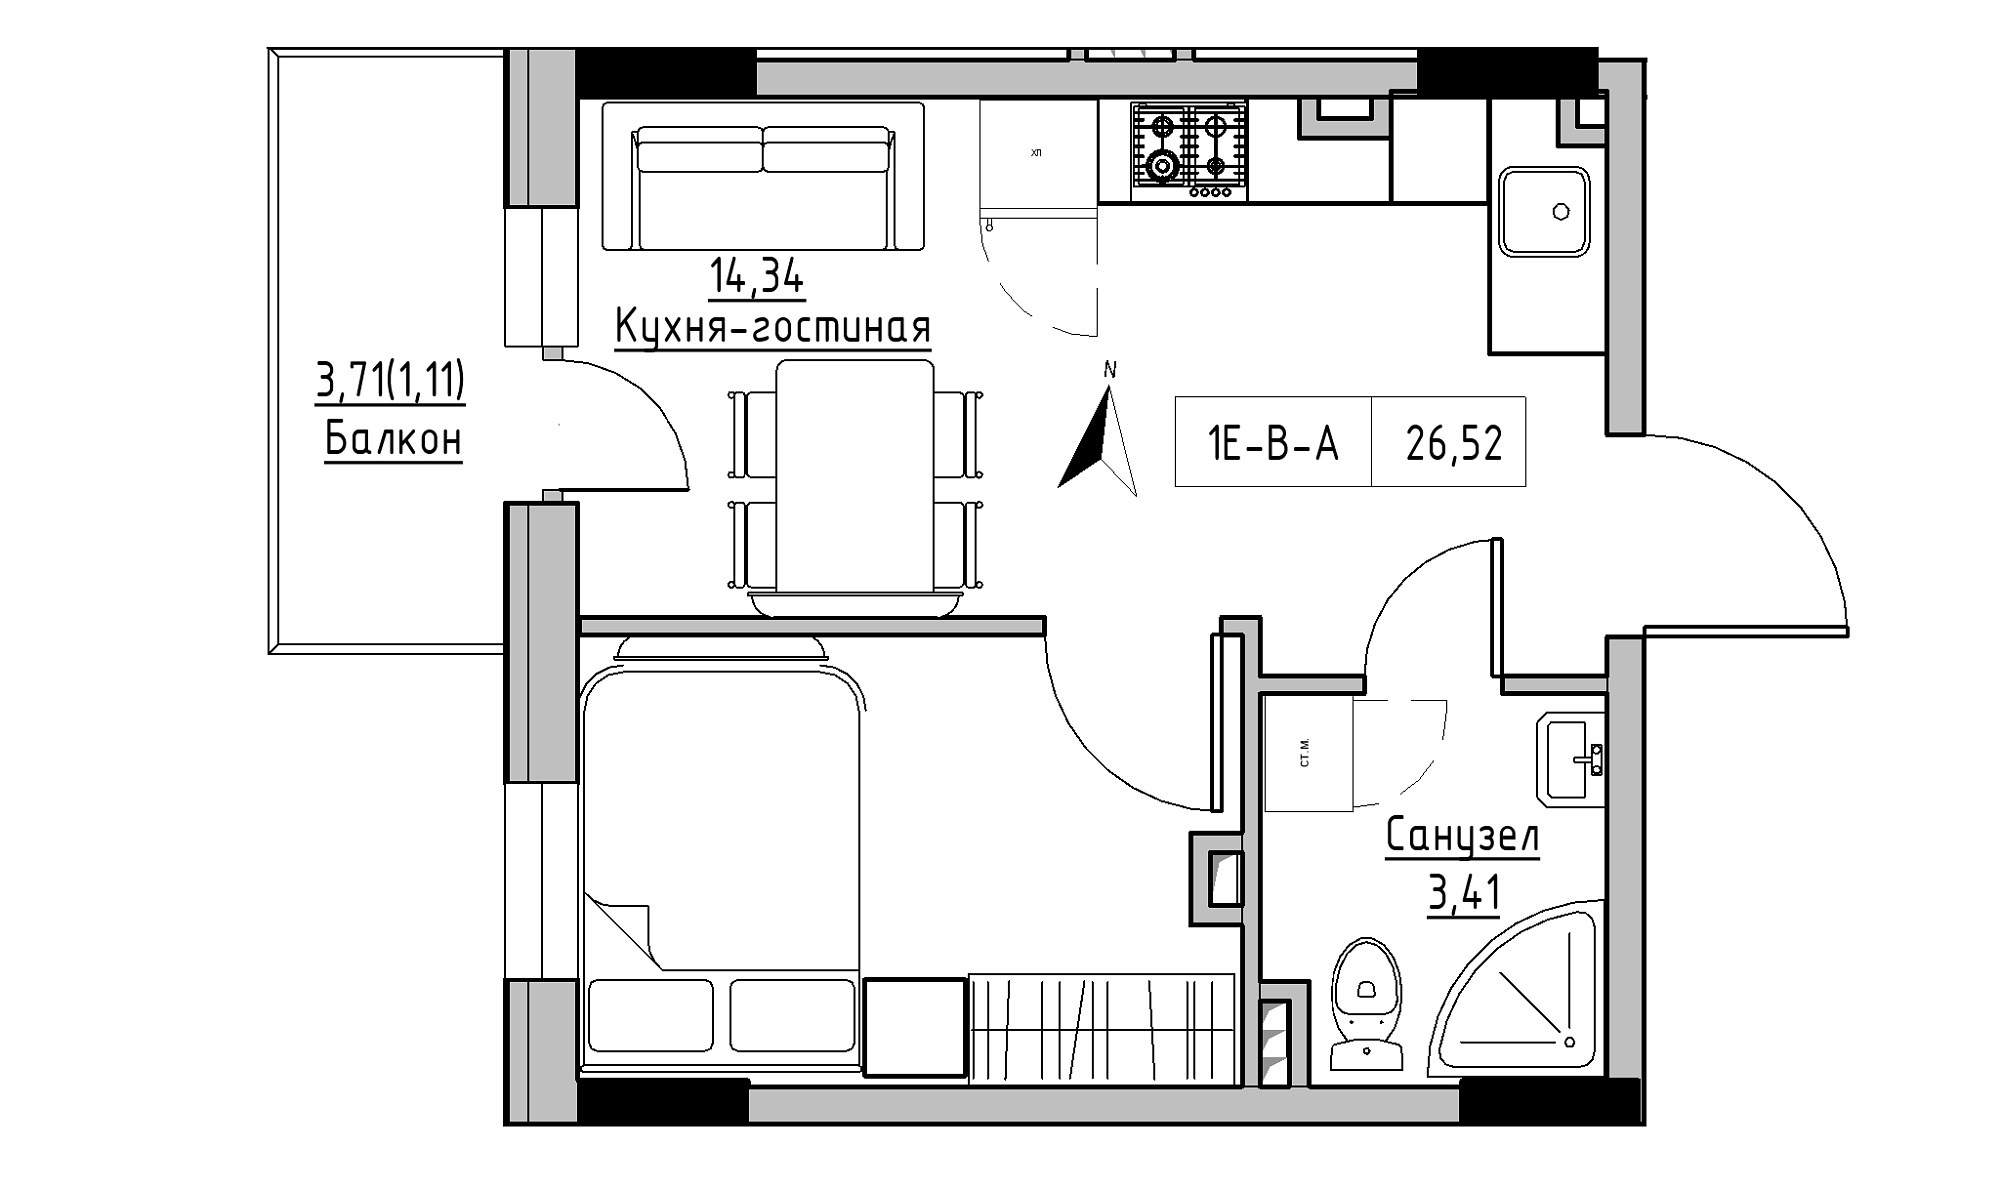 Планування 1-к квартира площею 26.52м2, KS-025-02/0005.